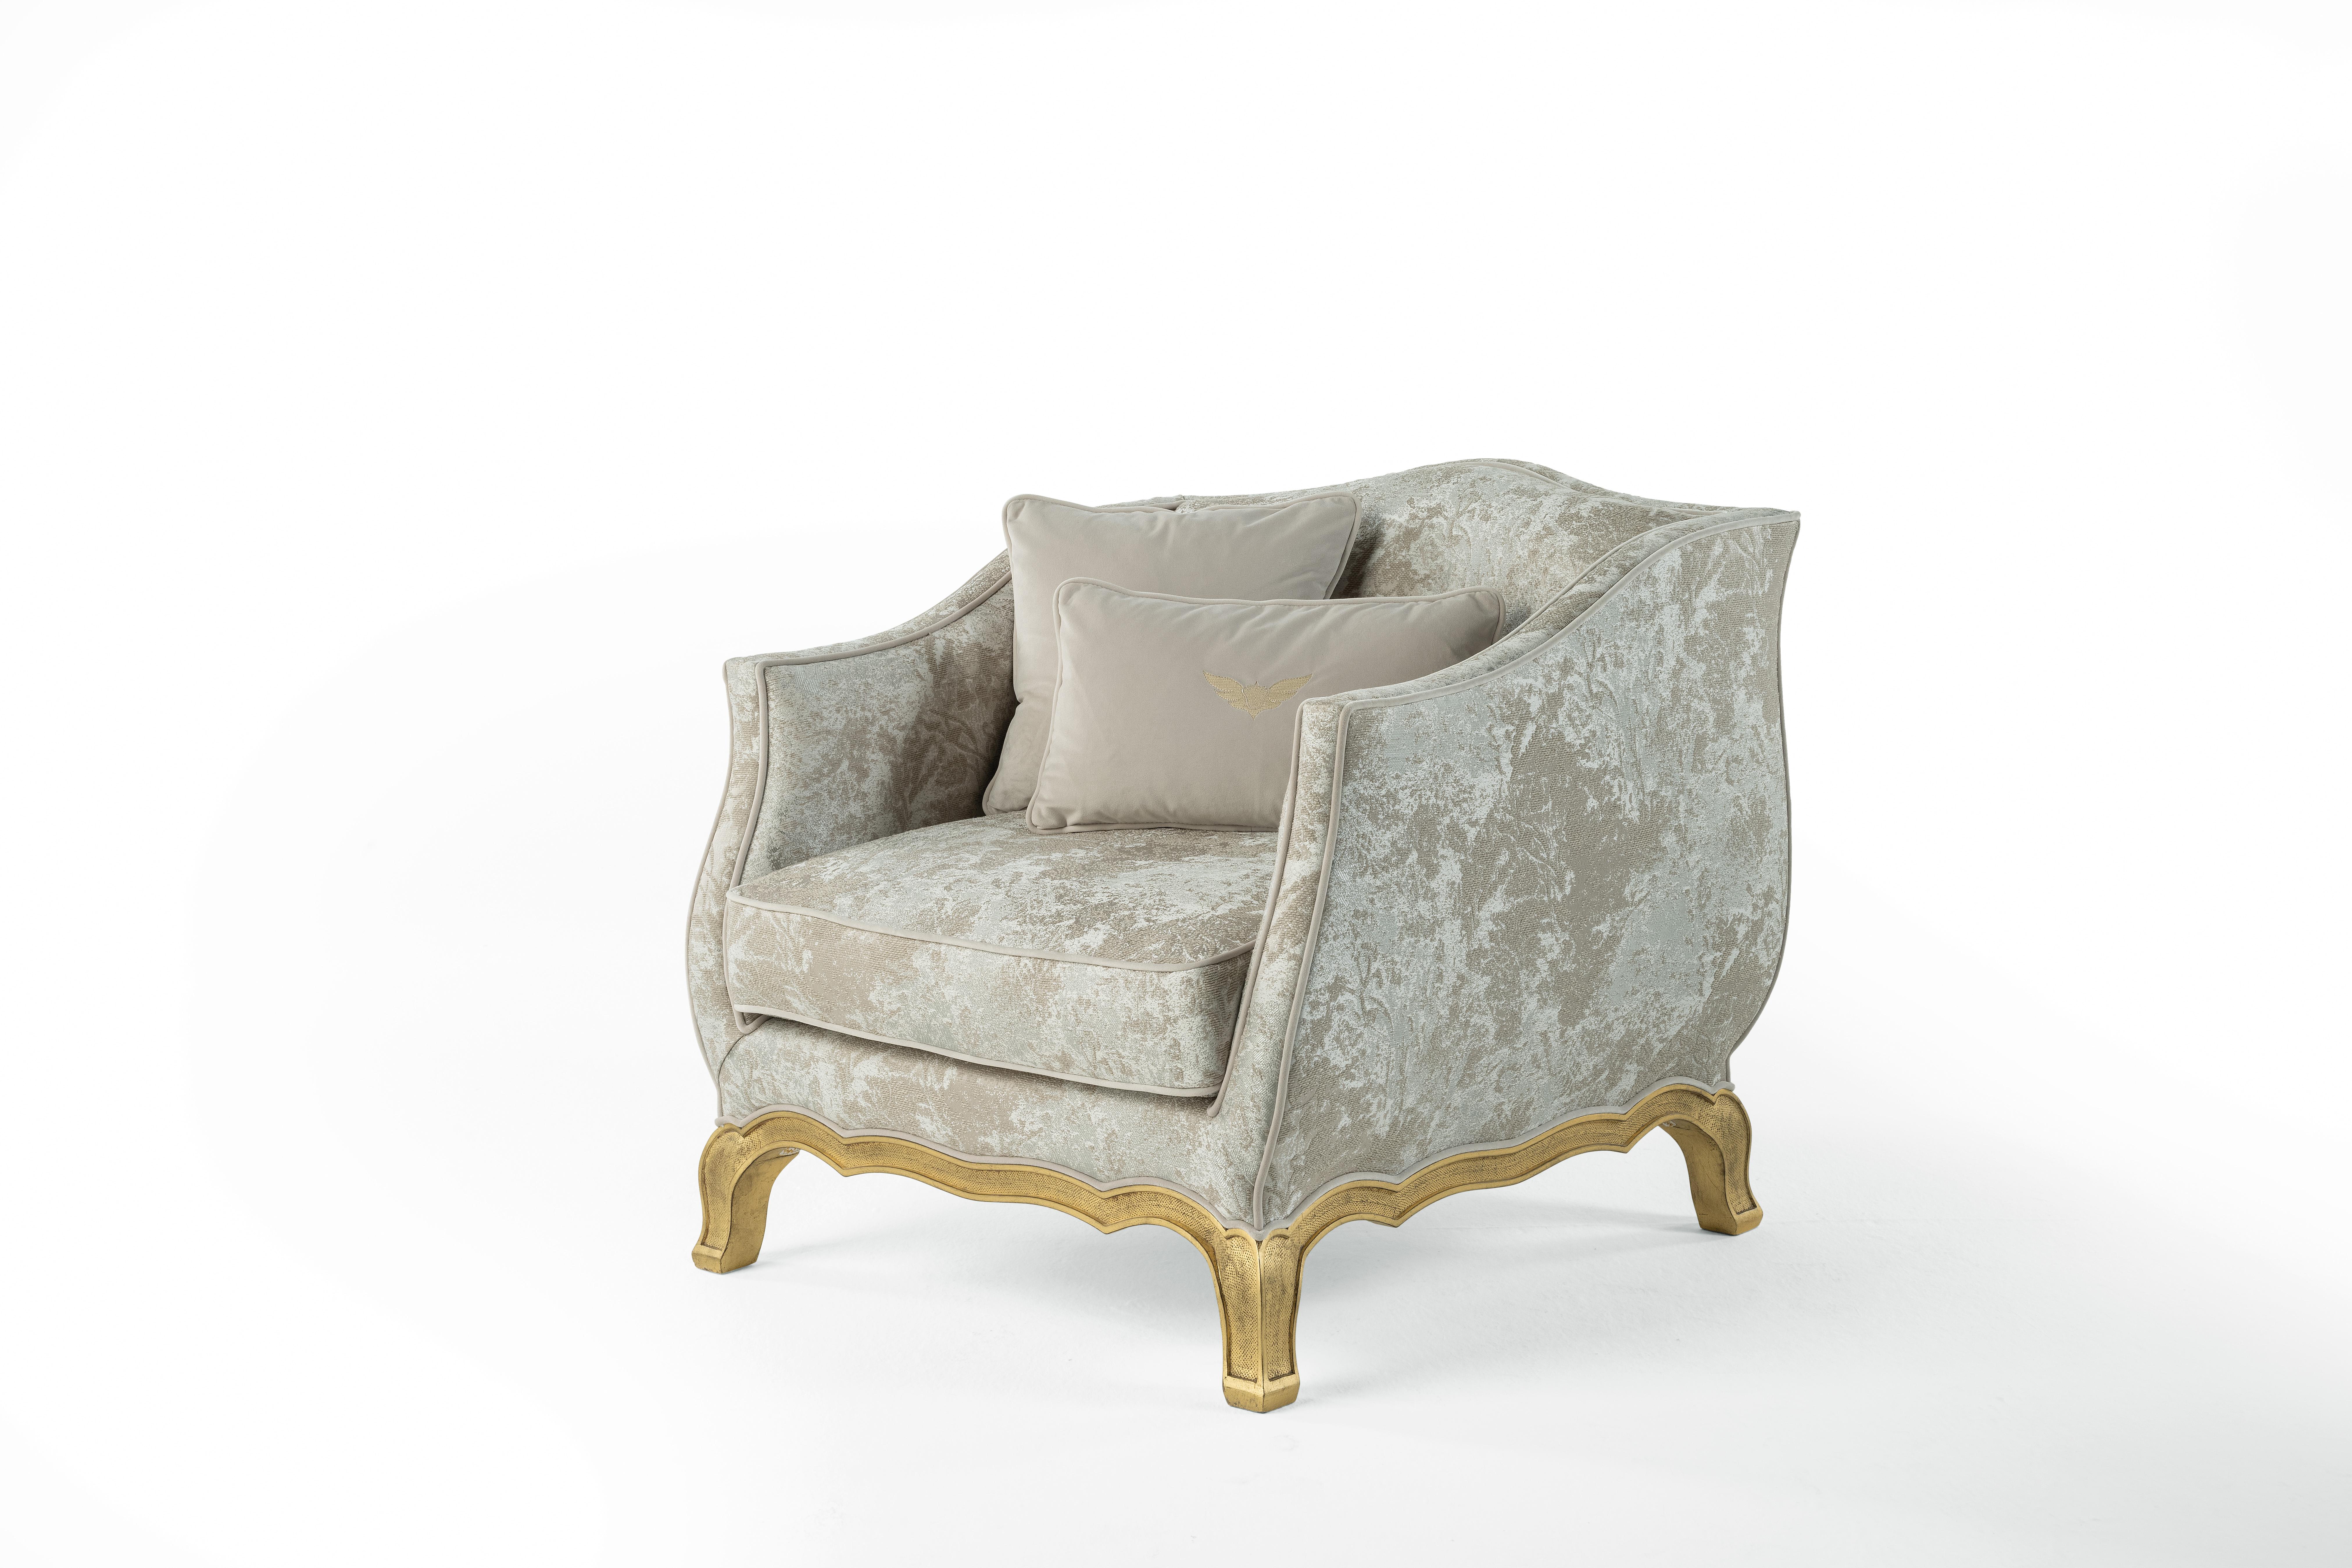 GrandCamée ist der perfekte Ausdruck eines hellen, klassischen Stils, bei dem die raffinierte Polsterung aus dem kostbaren Stoff der Collection'S auf den dekorativen Charme der Struktur mit der Ausführung in antikem Gold mit Patina trifft.
Sessel